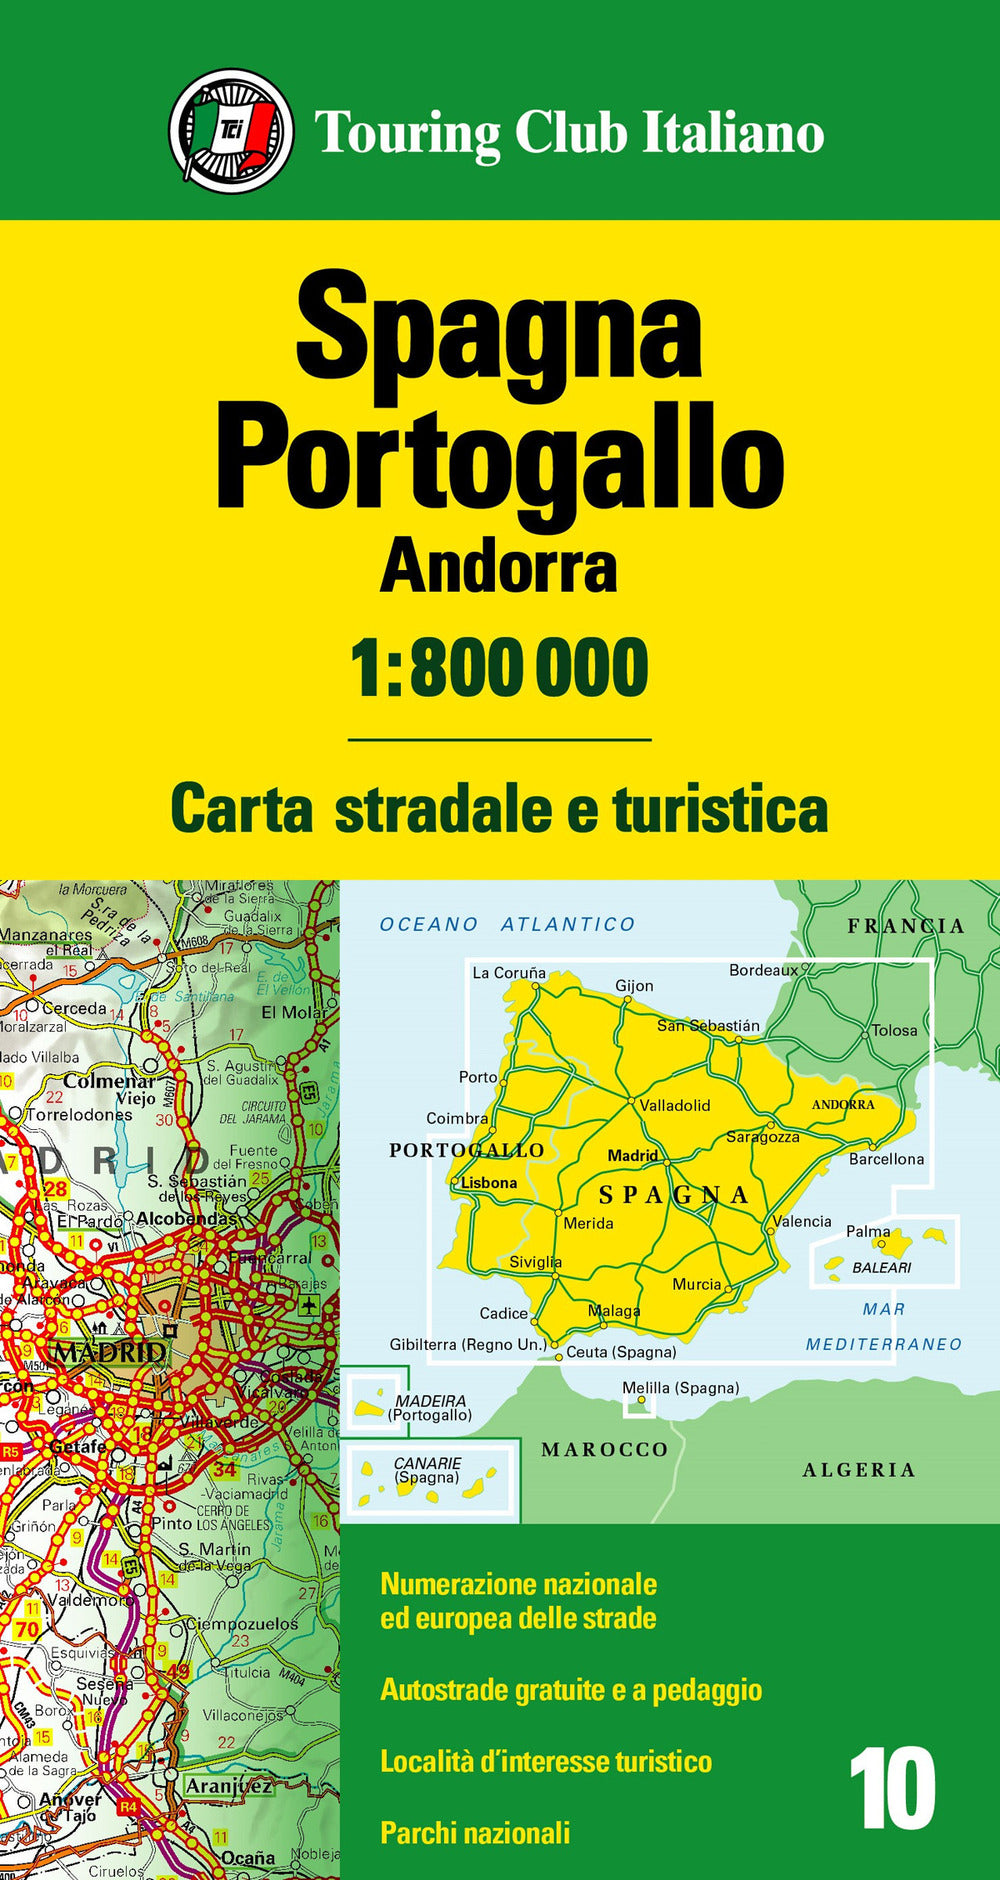 Spagna, Portogallo, Andorra 1:800.000. Carta stradale e turistica.